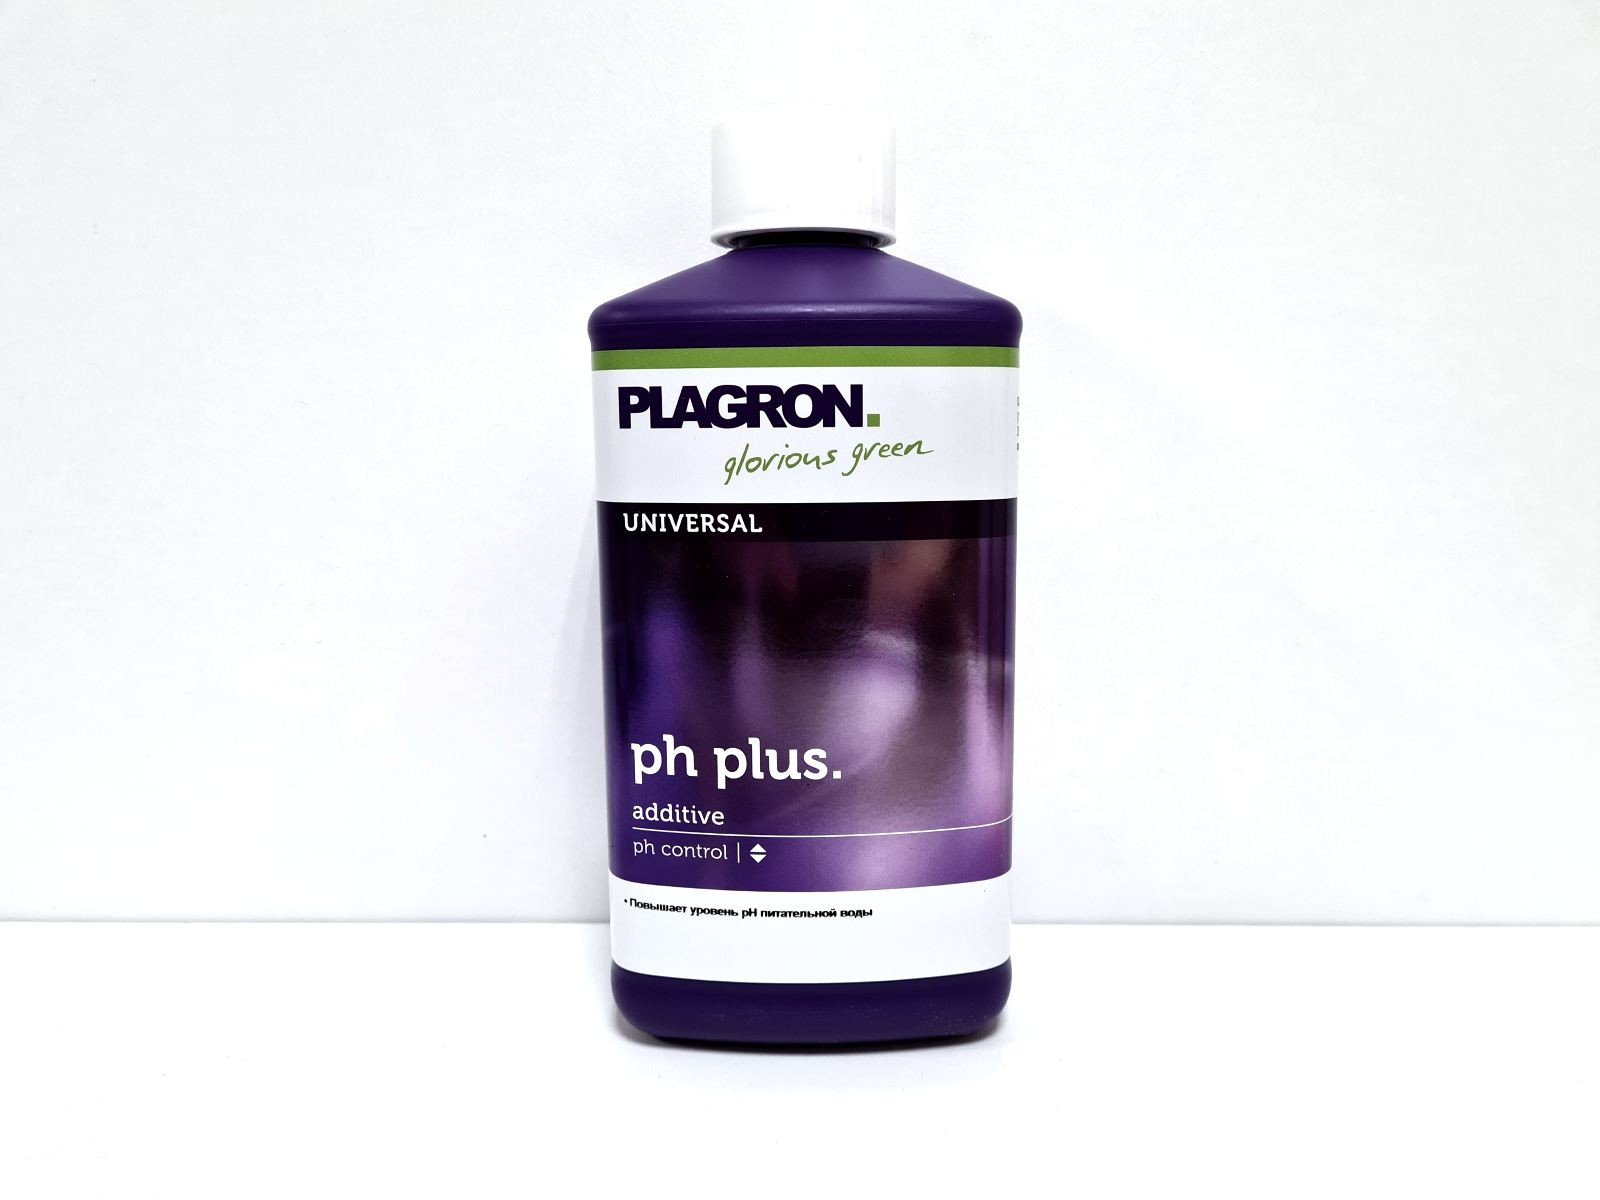 pH plus Plagron